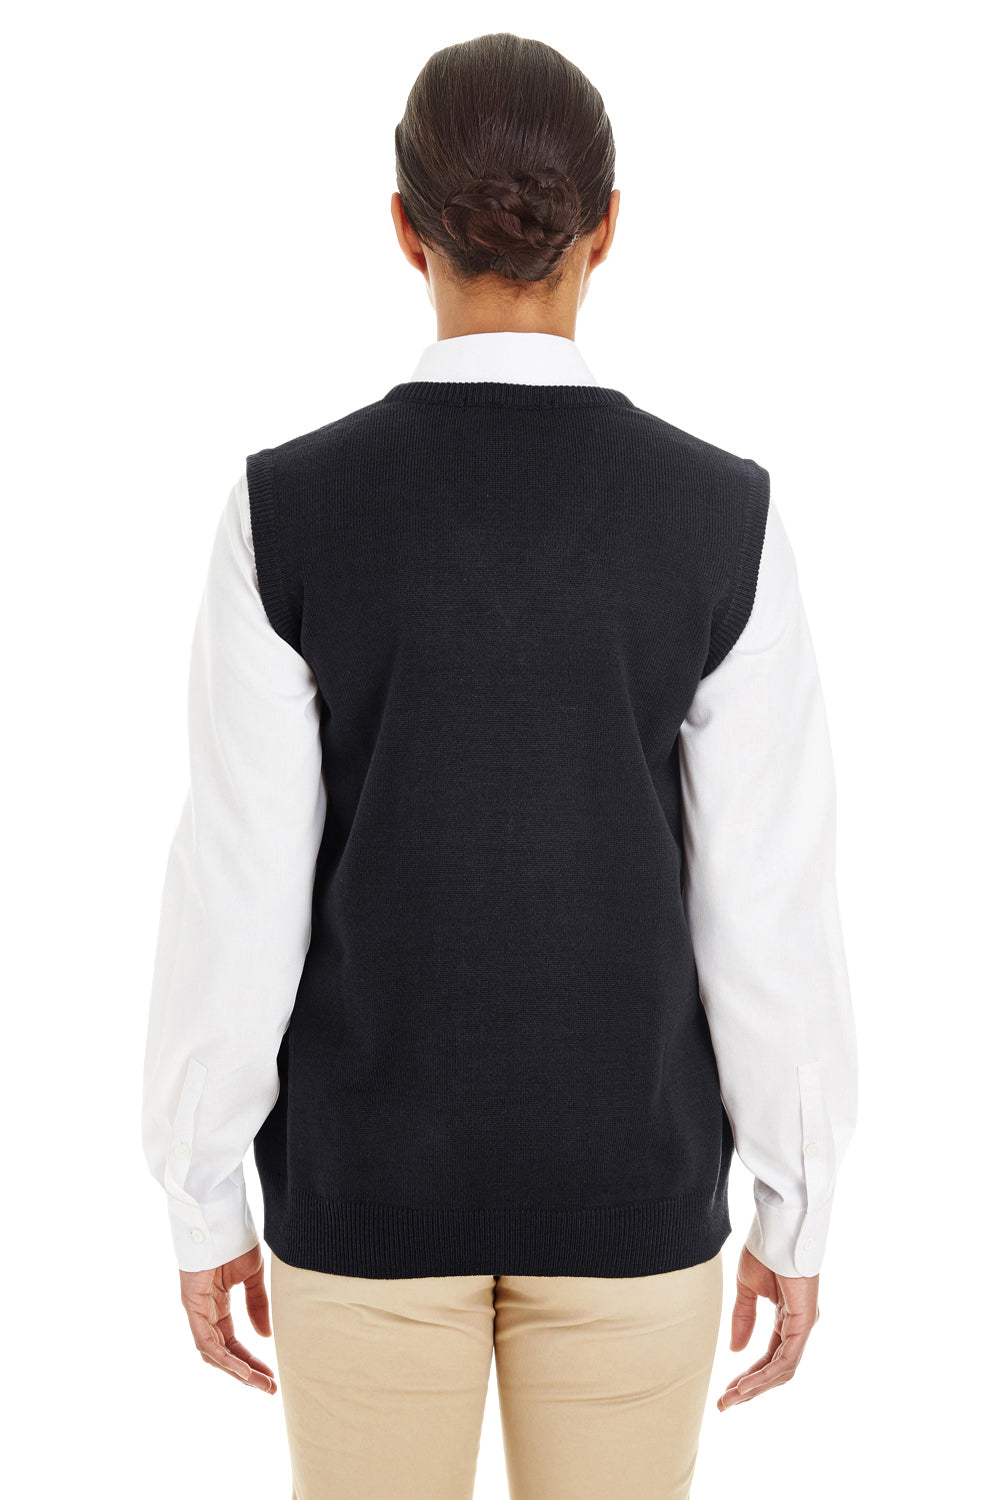 Harriton M415W Womens Pilbloc V-Neck Sweater Vest Black Back